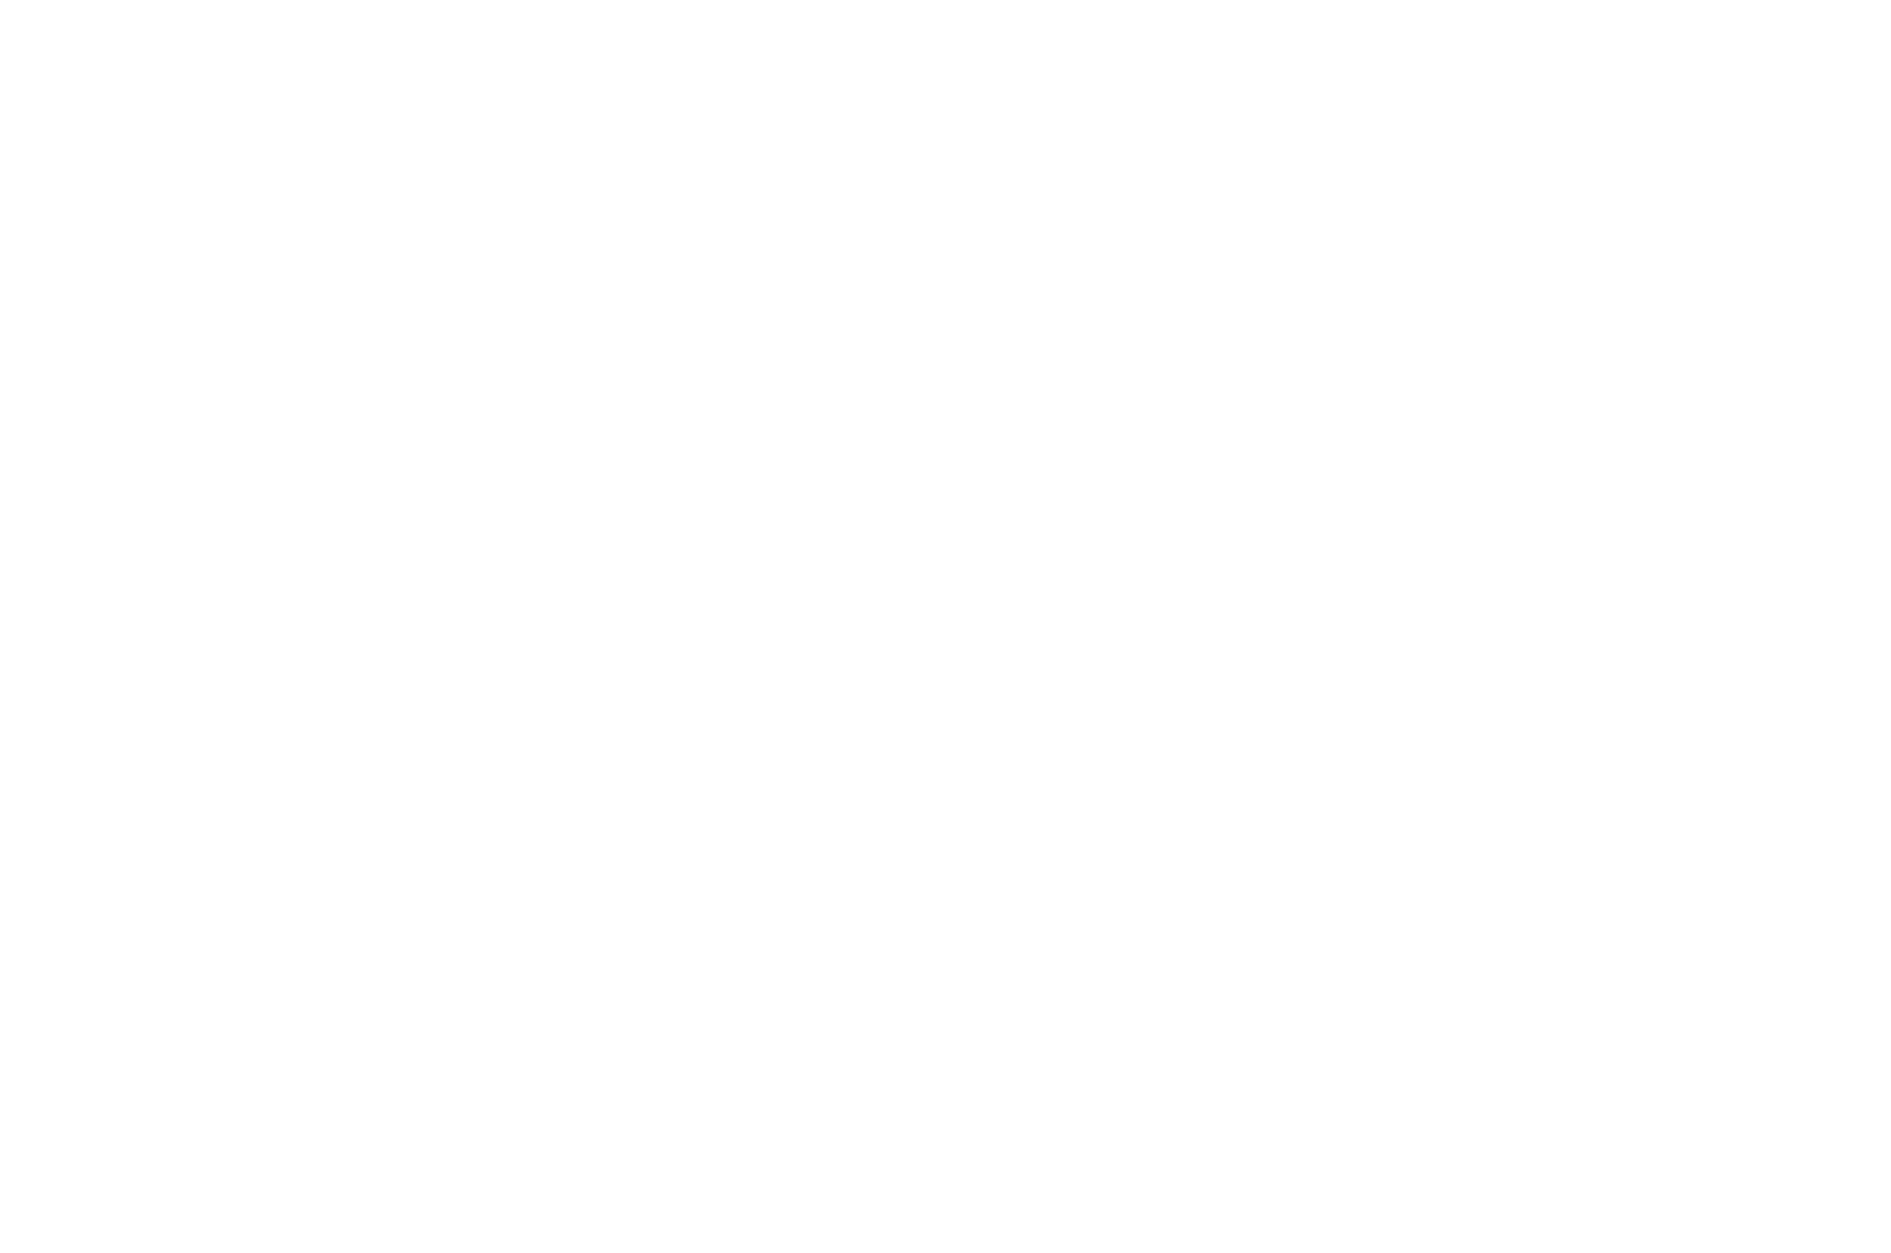 Tileco logo